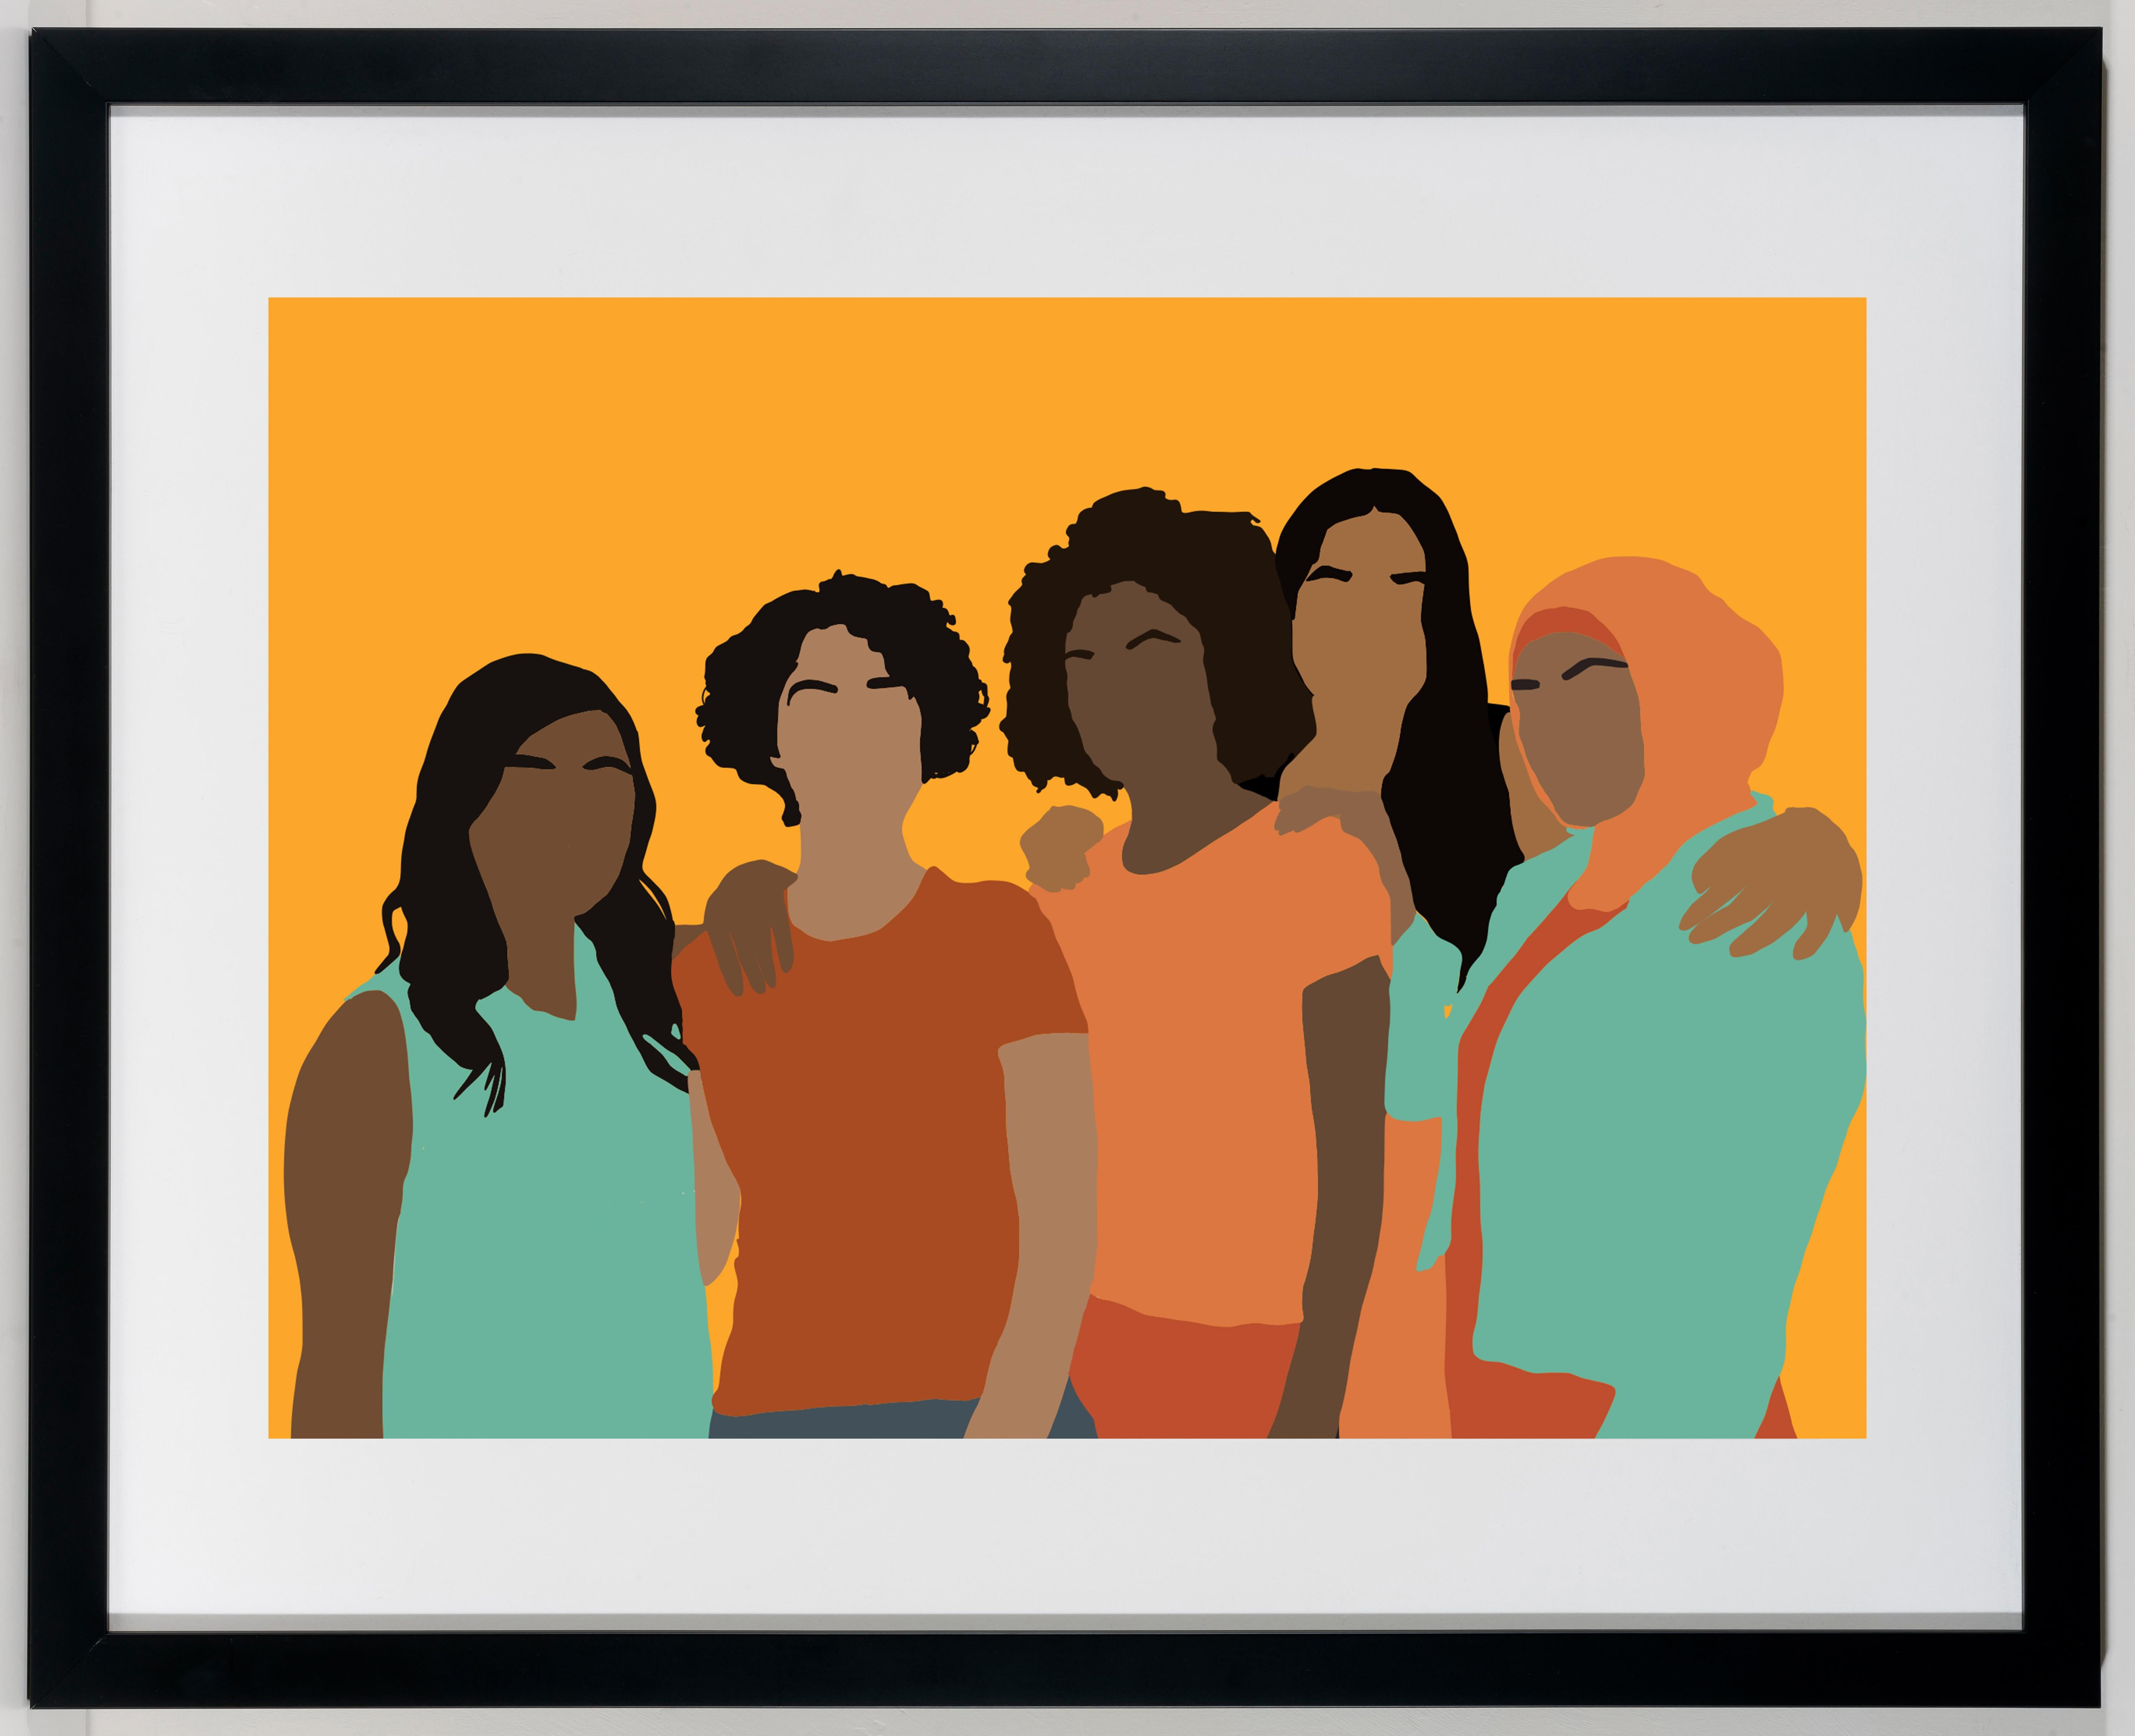 Congregate - gerahmter, farbenfroher Druck der Frauheit / Schwesternschaft / Frauen der Farbe